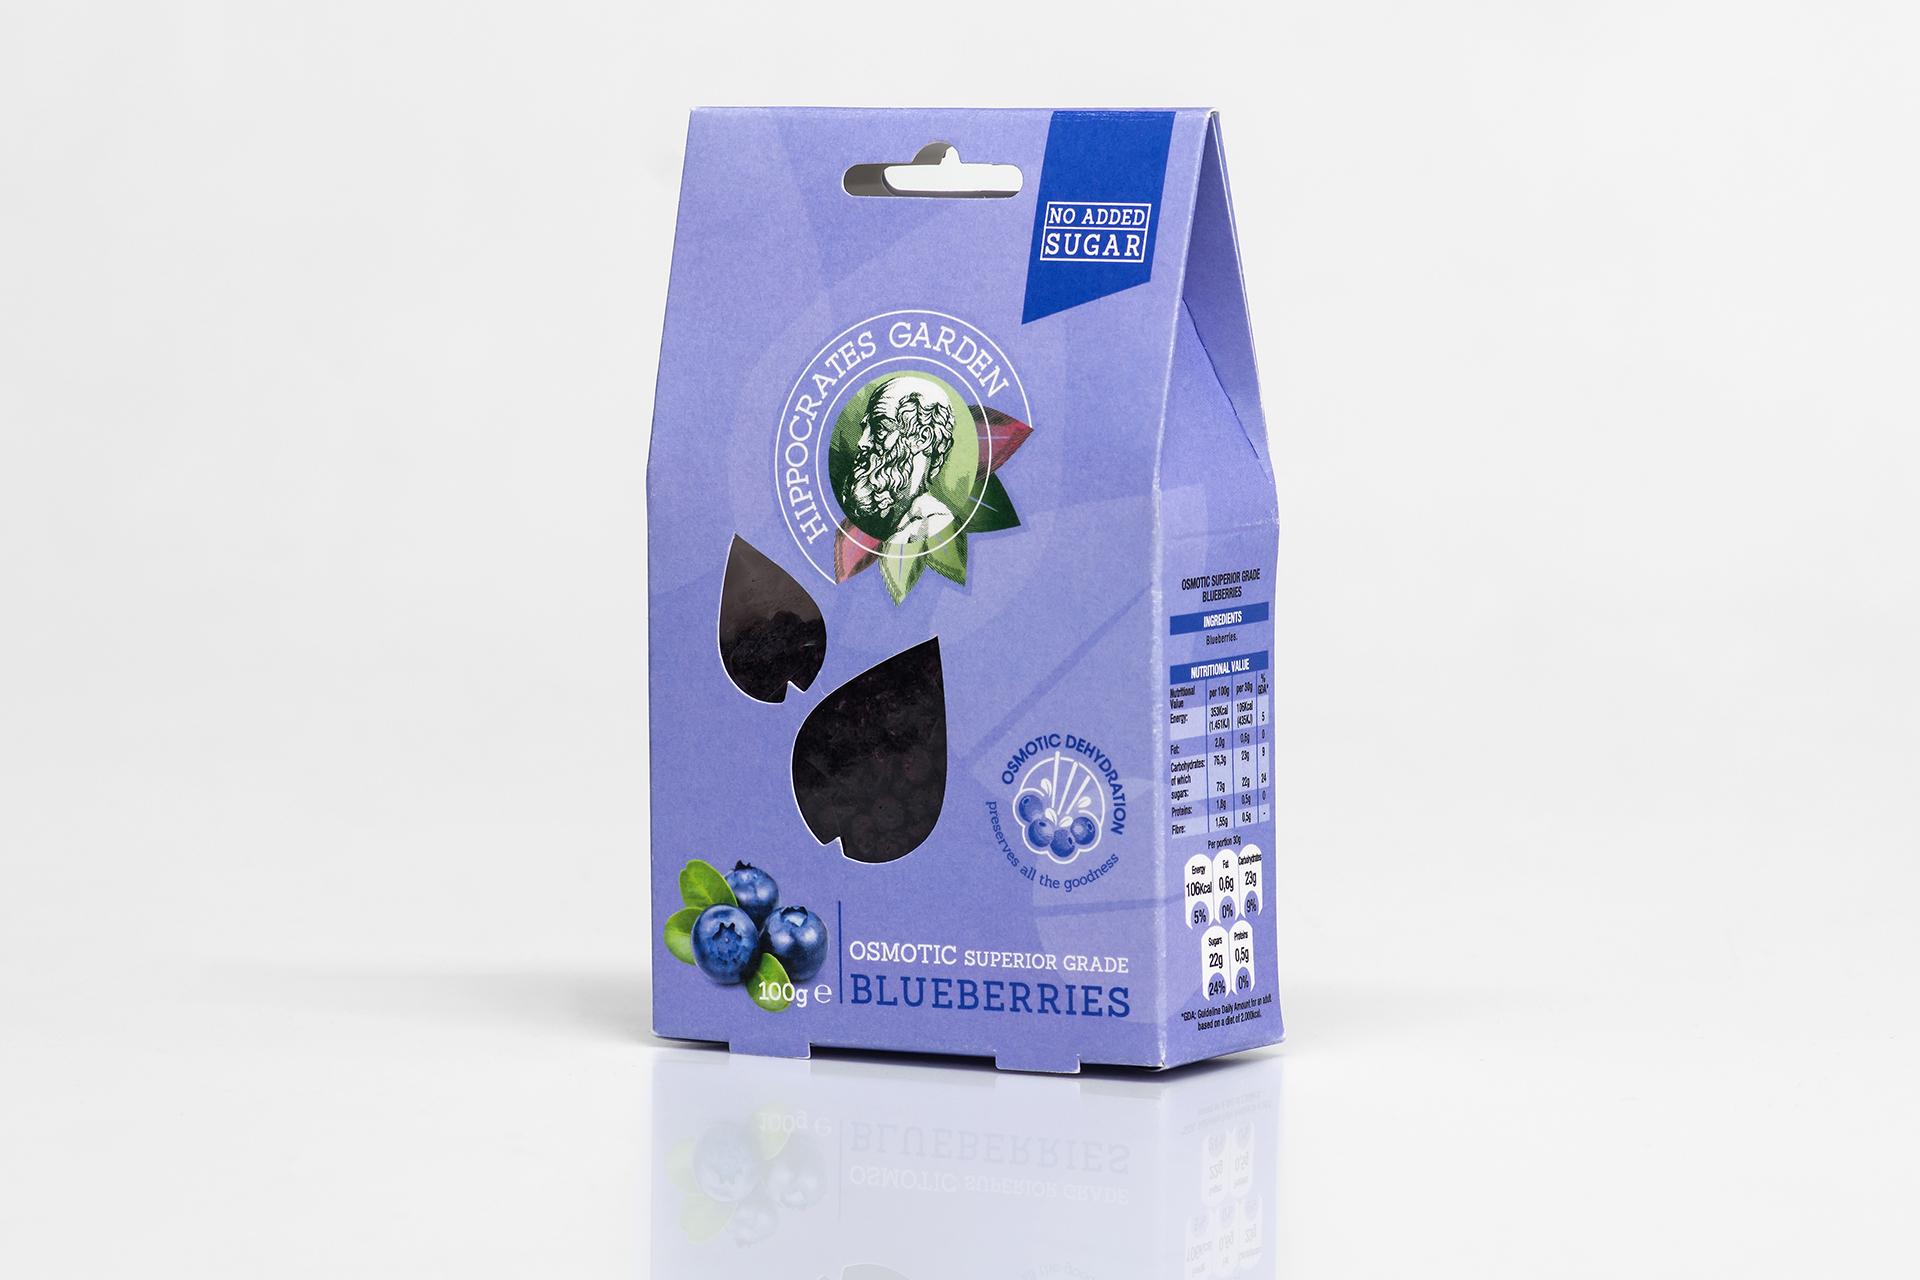 Blueberries packaging